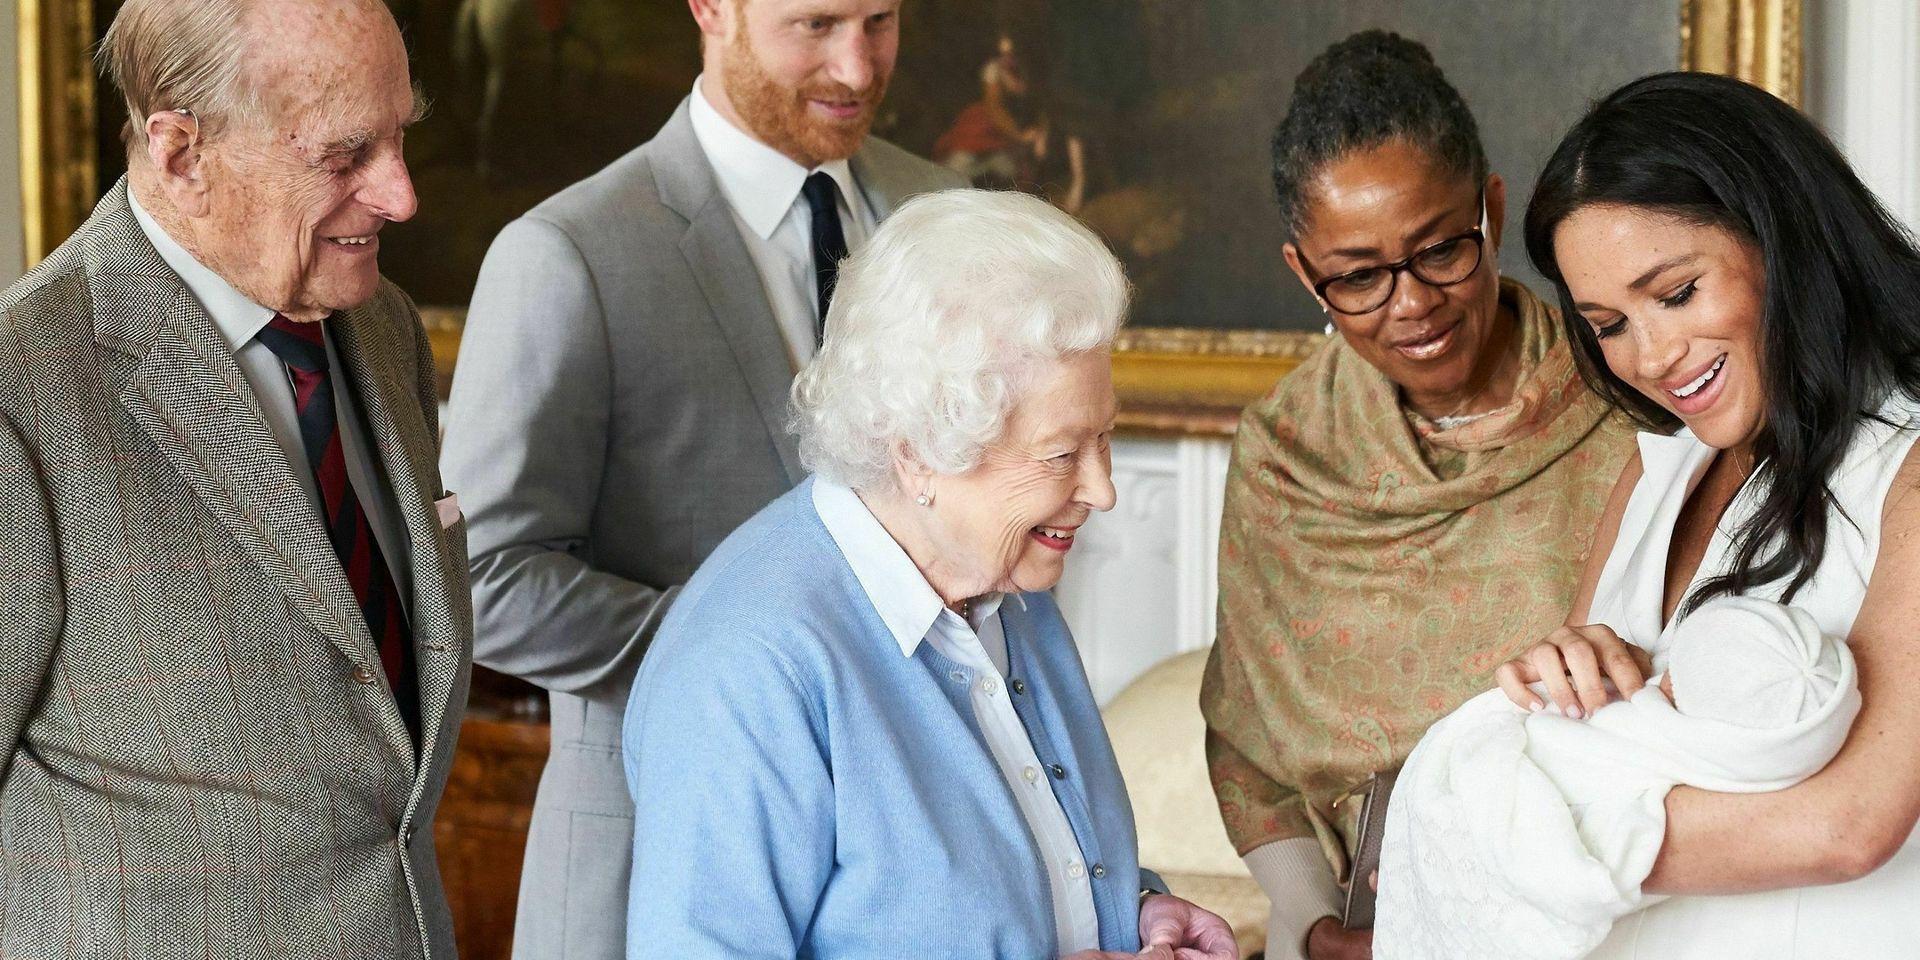 Drottning Elizabeth, och prins Philip, liksom Doria Ragland (mor till prins Harrys hustru Meghan) hälsar under överinseende av prins Harry och Meghan på Archie Harrison Mountbatten-Windsor. Arkivbild från maj 2019. 